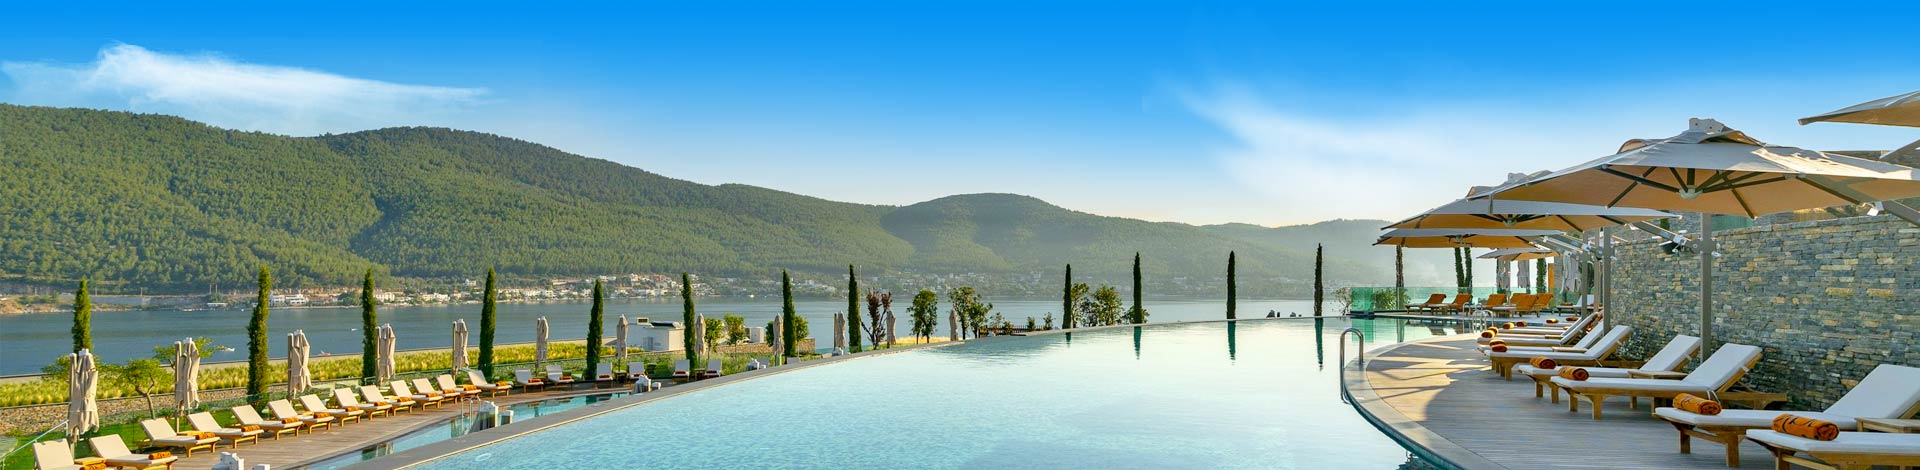 Prachtig luxe zwembad met ligbedjes met heuvels en de zee aan de kust van Turkije